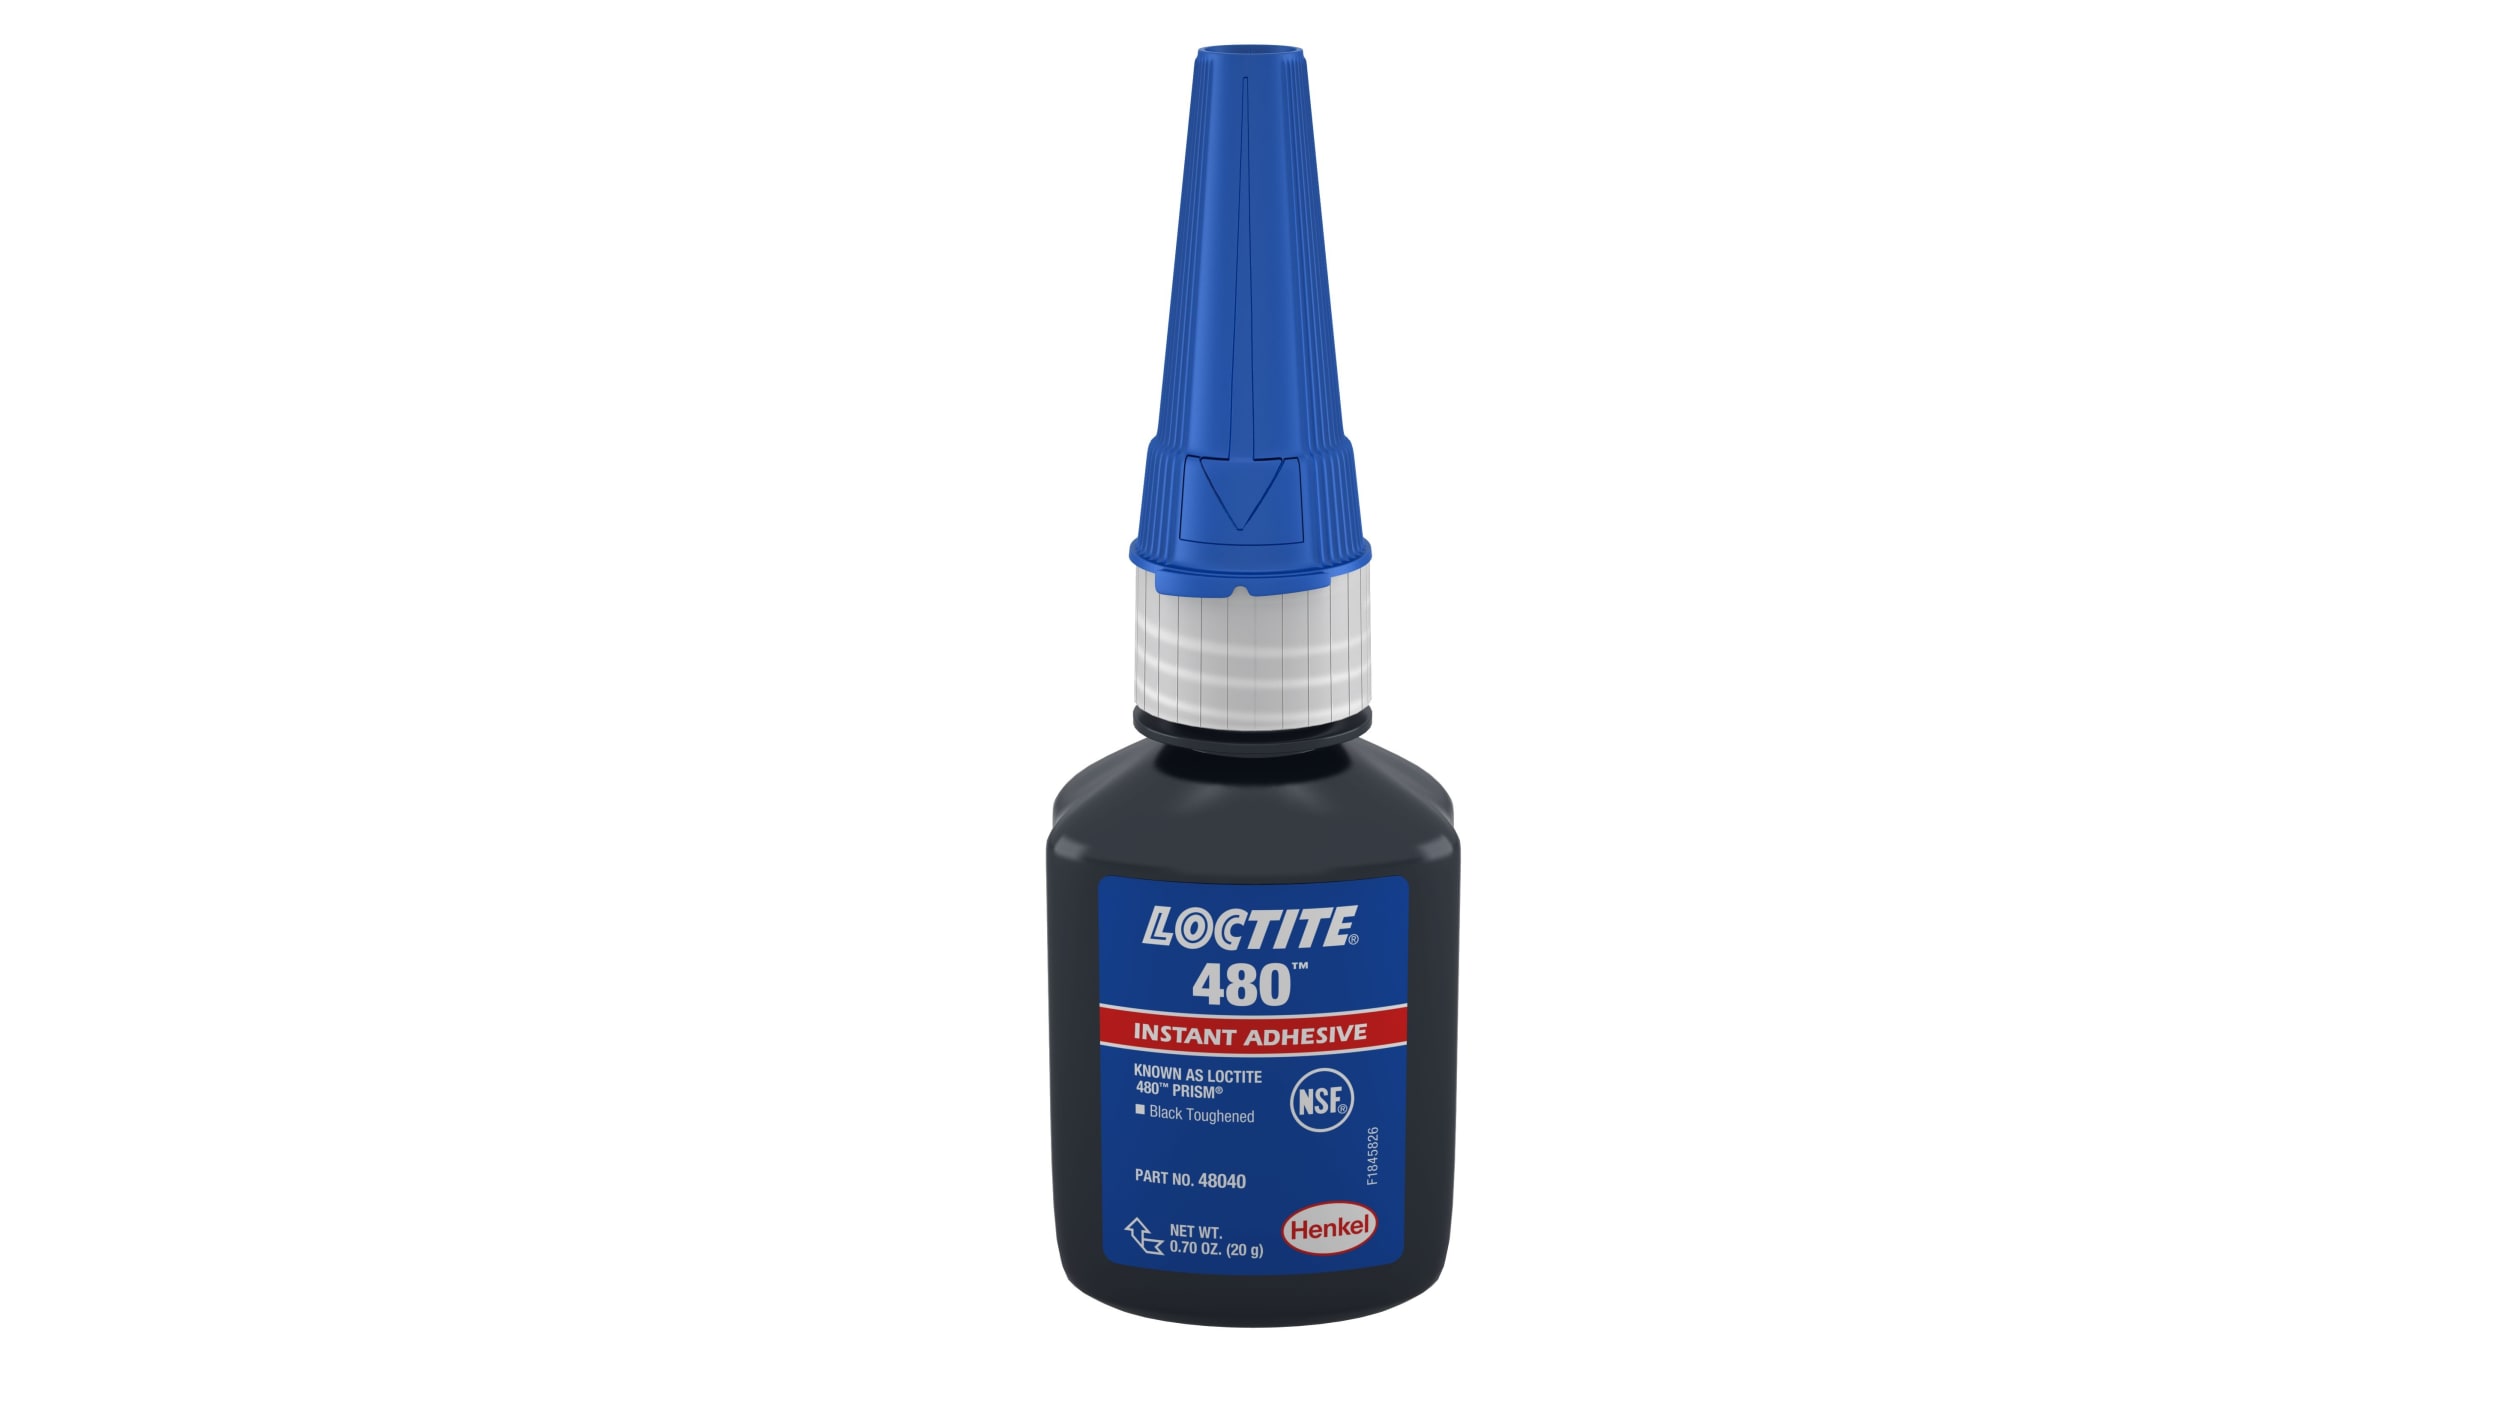 Loctite 406 Instant Adhesive Glue .70 oz for Plastic & Rubber (10pk)  (161-C6)